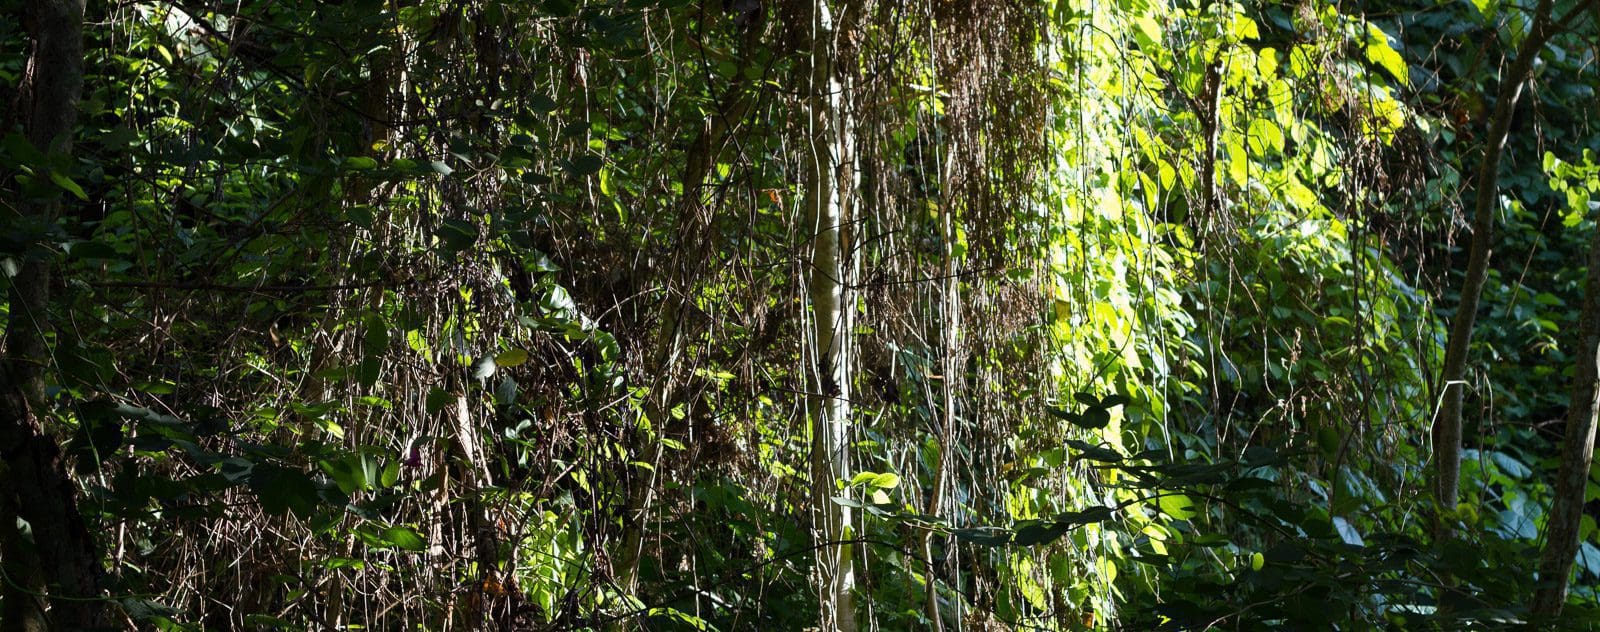 Jungle vegetation in Tangkoko National Park